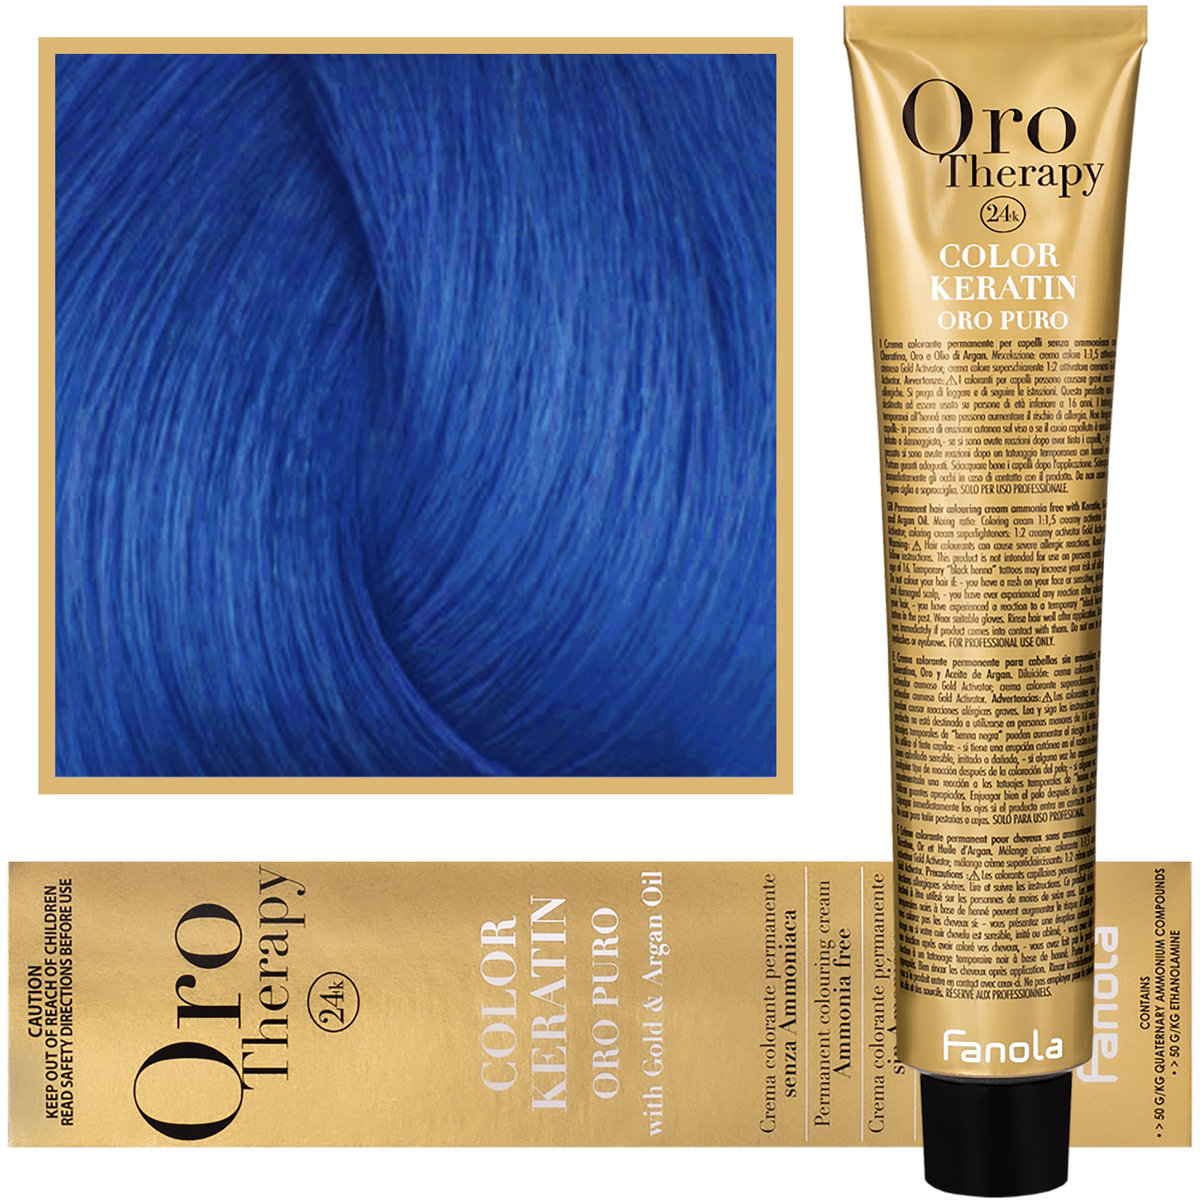 Fanola Blue Oro Puro Therapy Keratin Color 100 ML HC-19-01